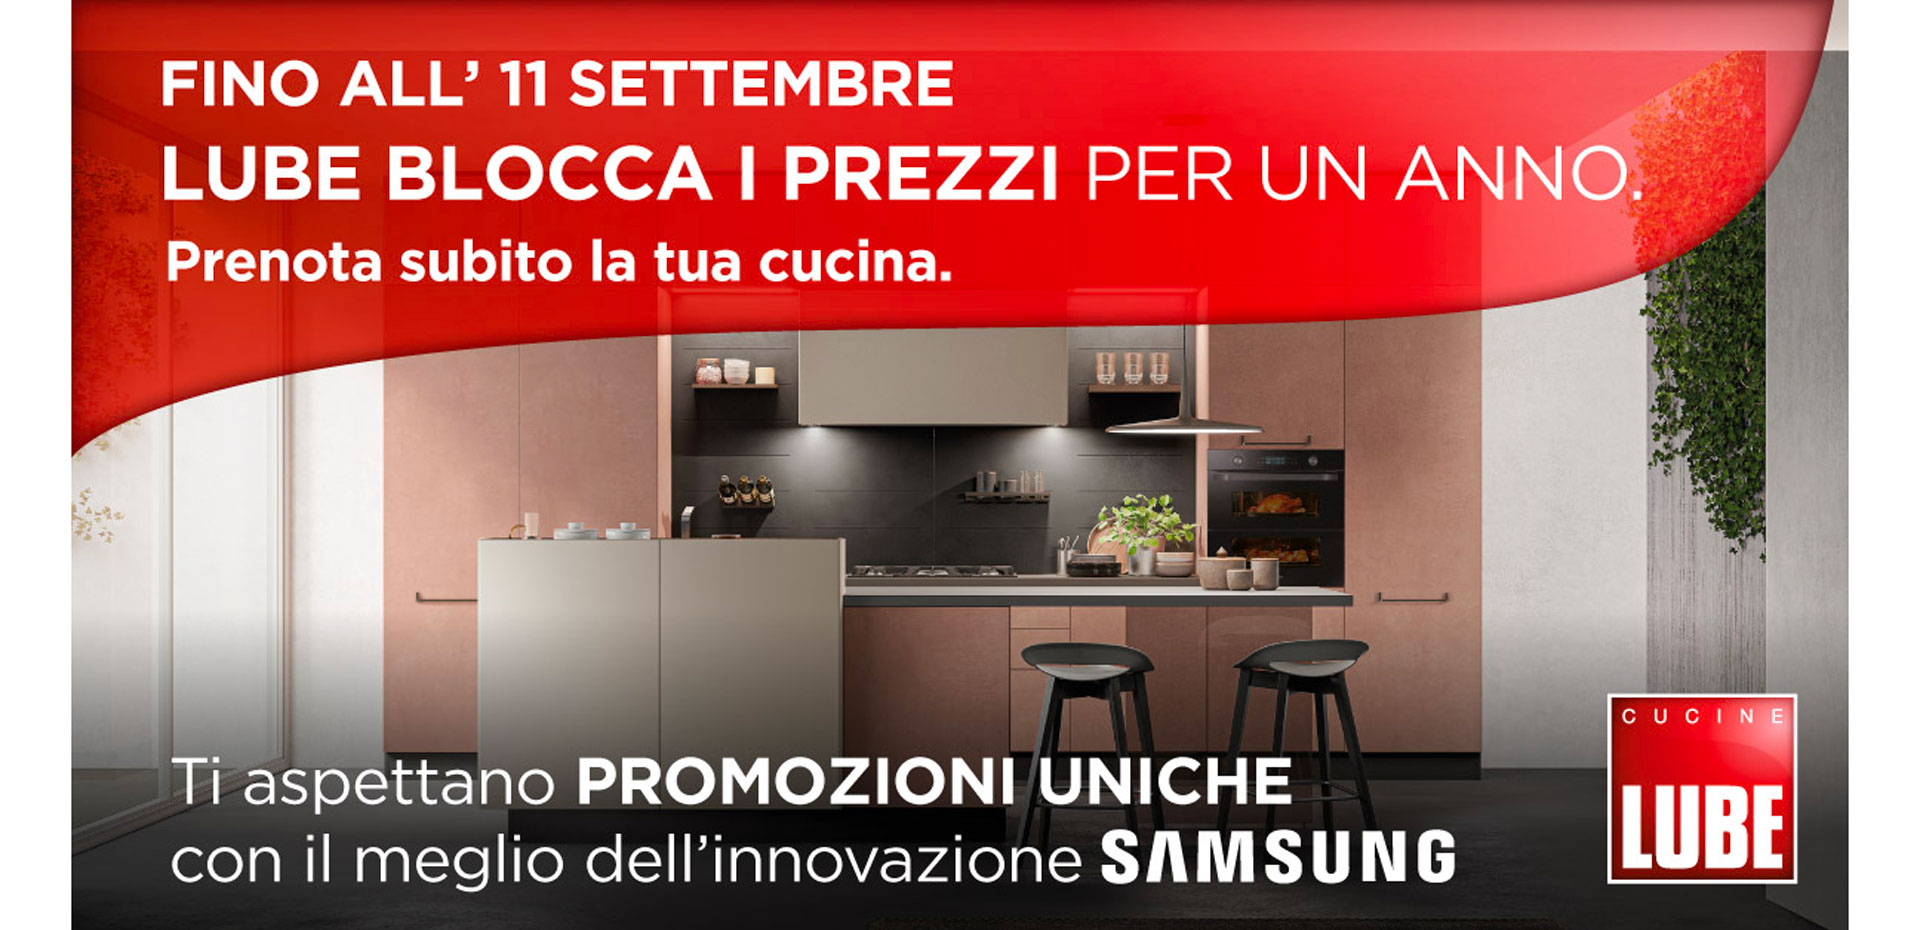 Prenota subito la tua nuova cucina LUBE entro l'11 settembre! Ti garantiamo il prezzo bloccato per 12 mesi! - LUBE CREO Store Guidonia (Roma)